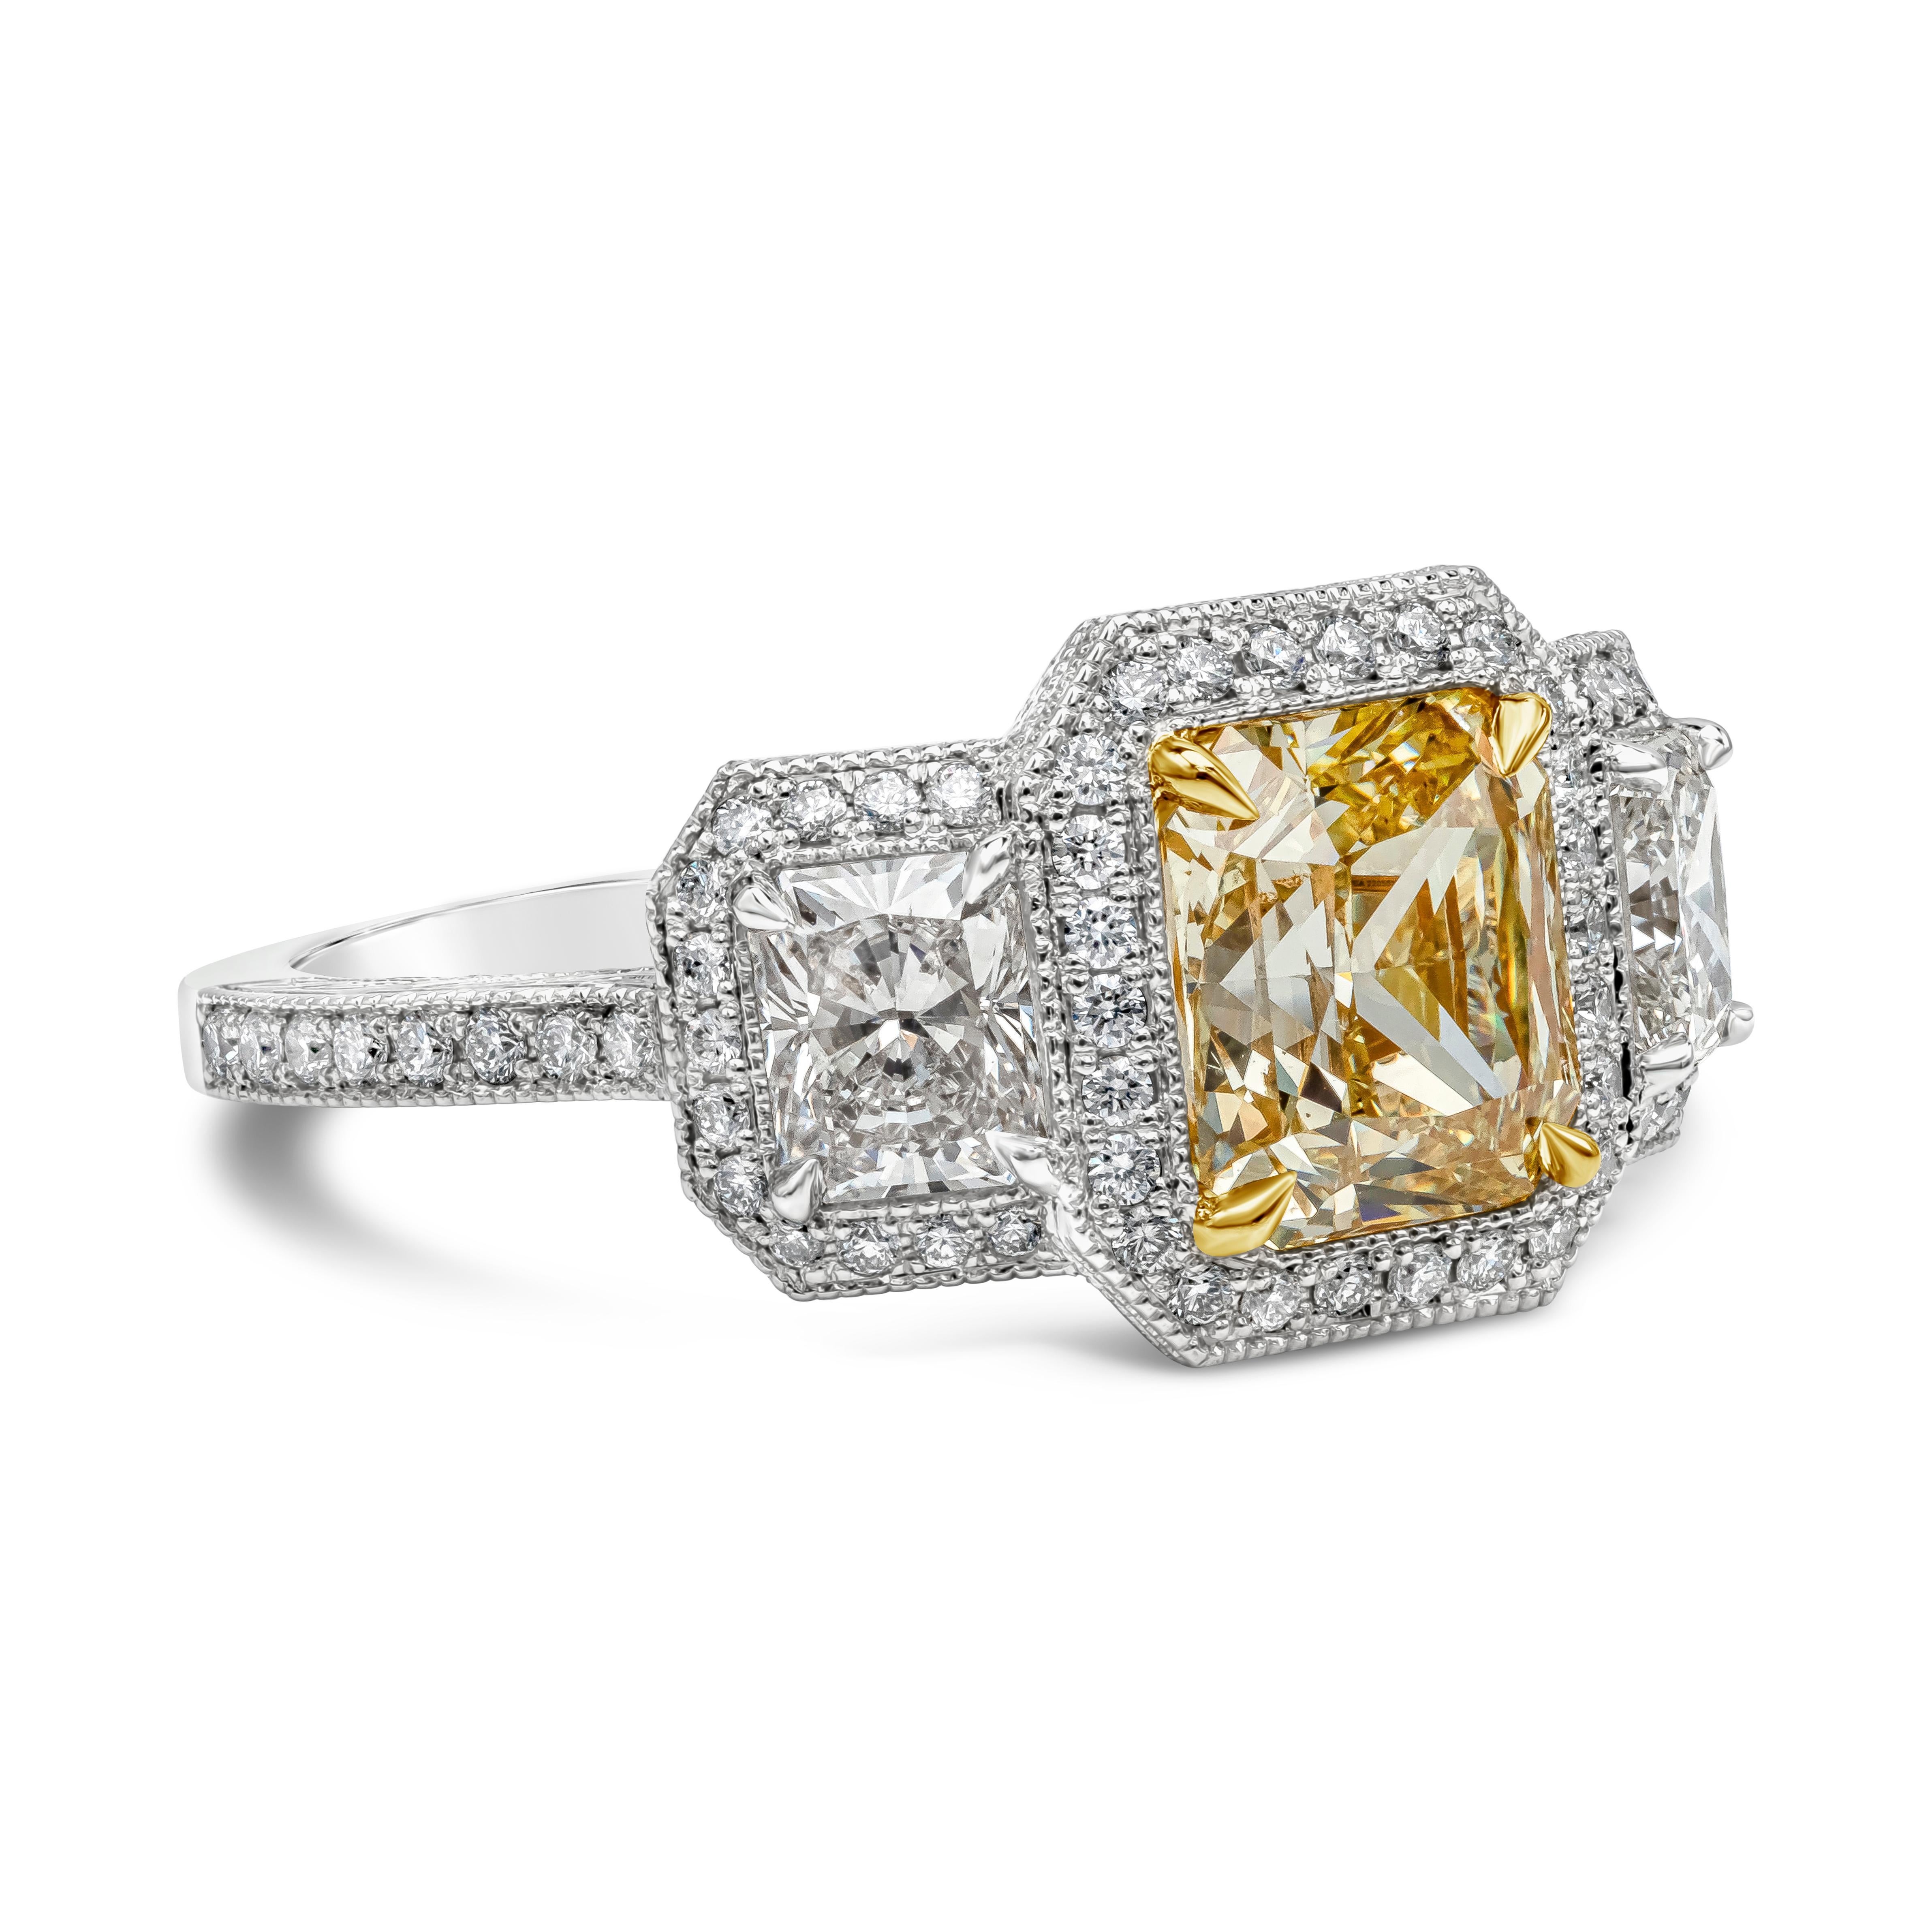 Cette bague de fiançailles unique, fabriquée à la main, met en valeur un diamant jaune de taille radieuse de 1,96 carats, certifié par le GIA comme étant de couleur jaune fantaisie et de pureté SI1, serti dans une monture panier en or jaune 18